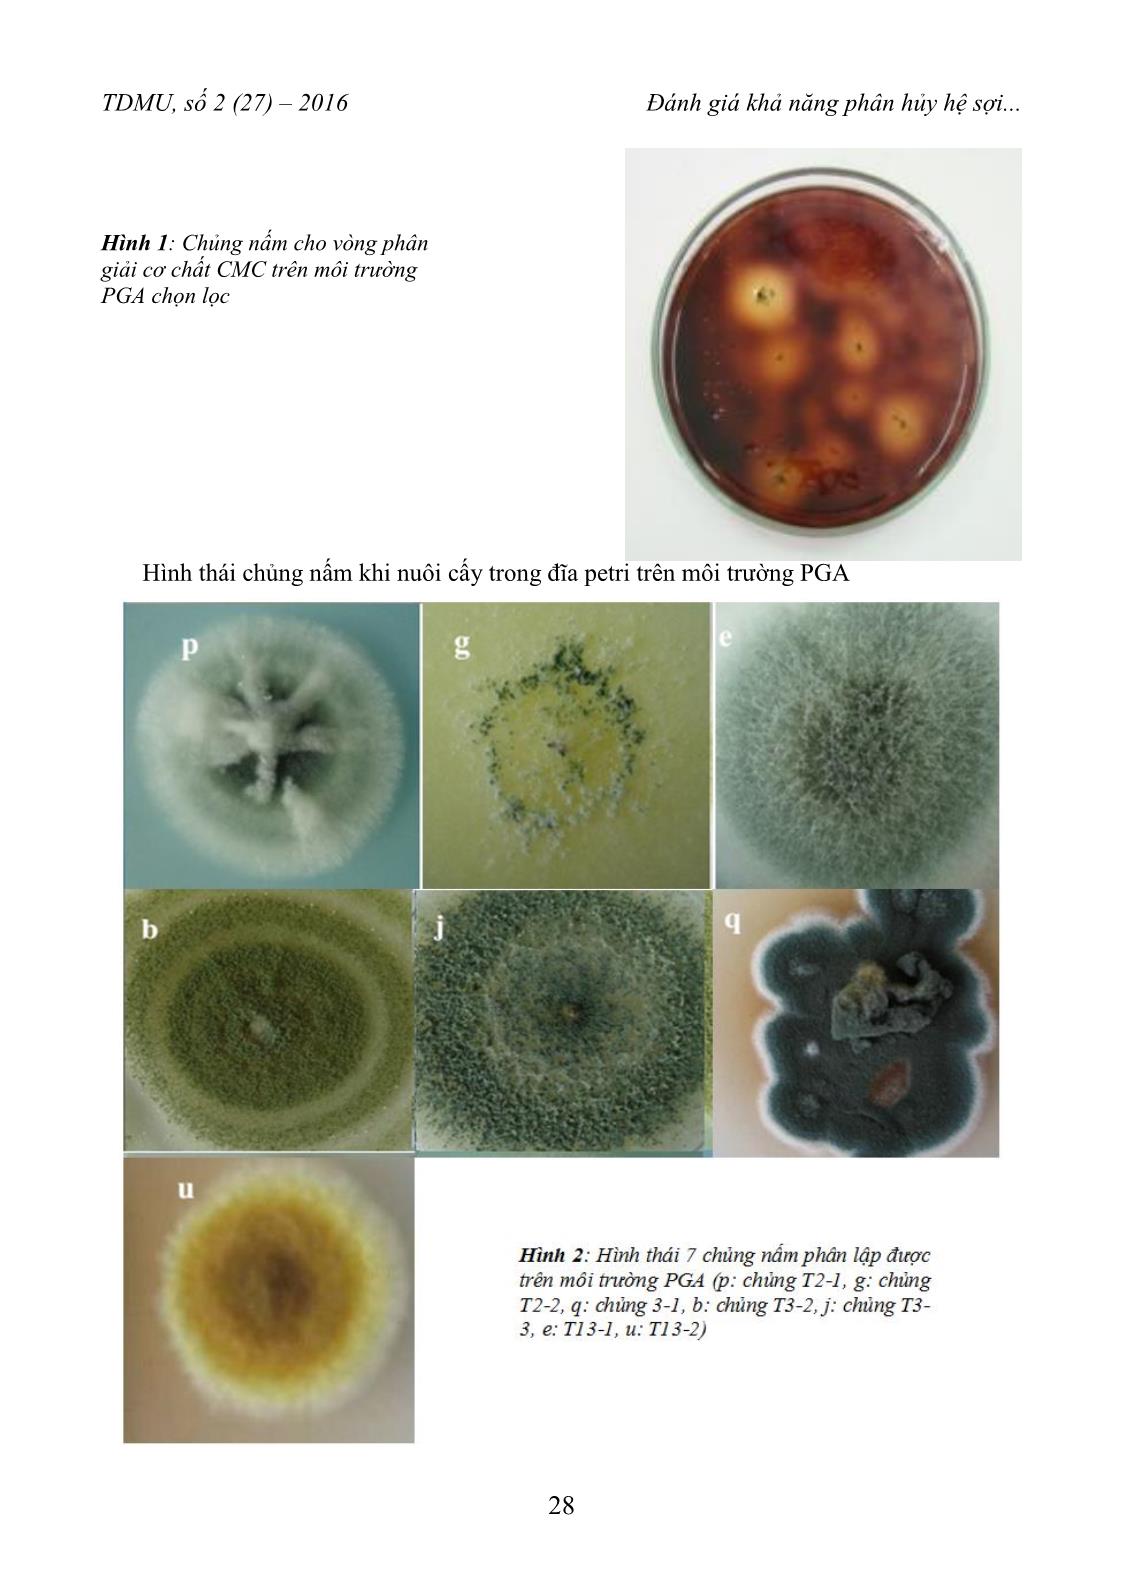 Đánh giá khả năng phân huỷ hệ sợi của lục bình eichhornia crassipes bằng chủng nấm trichoderma SP trang 4